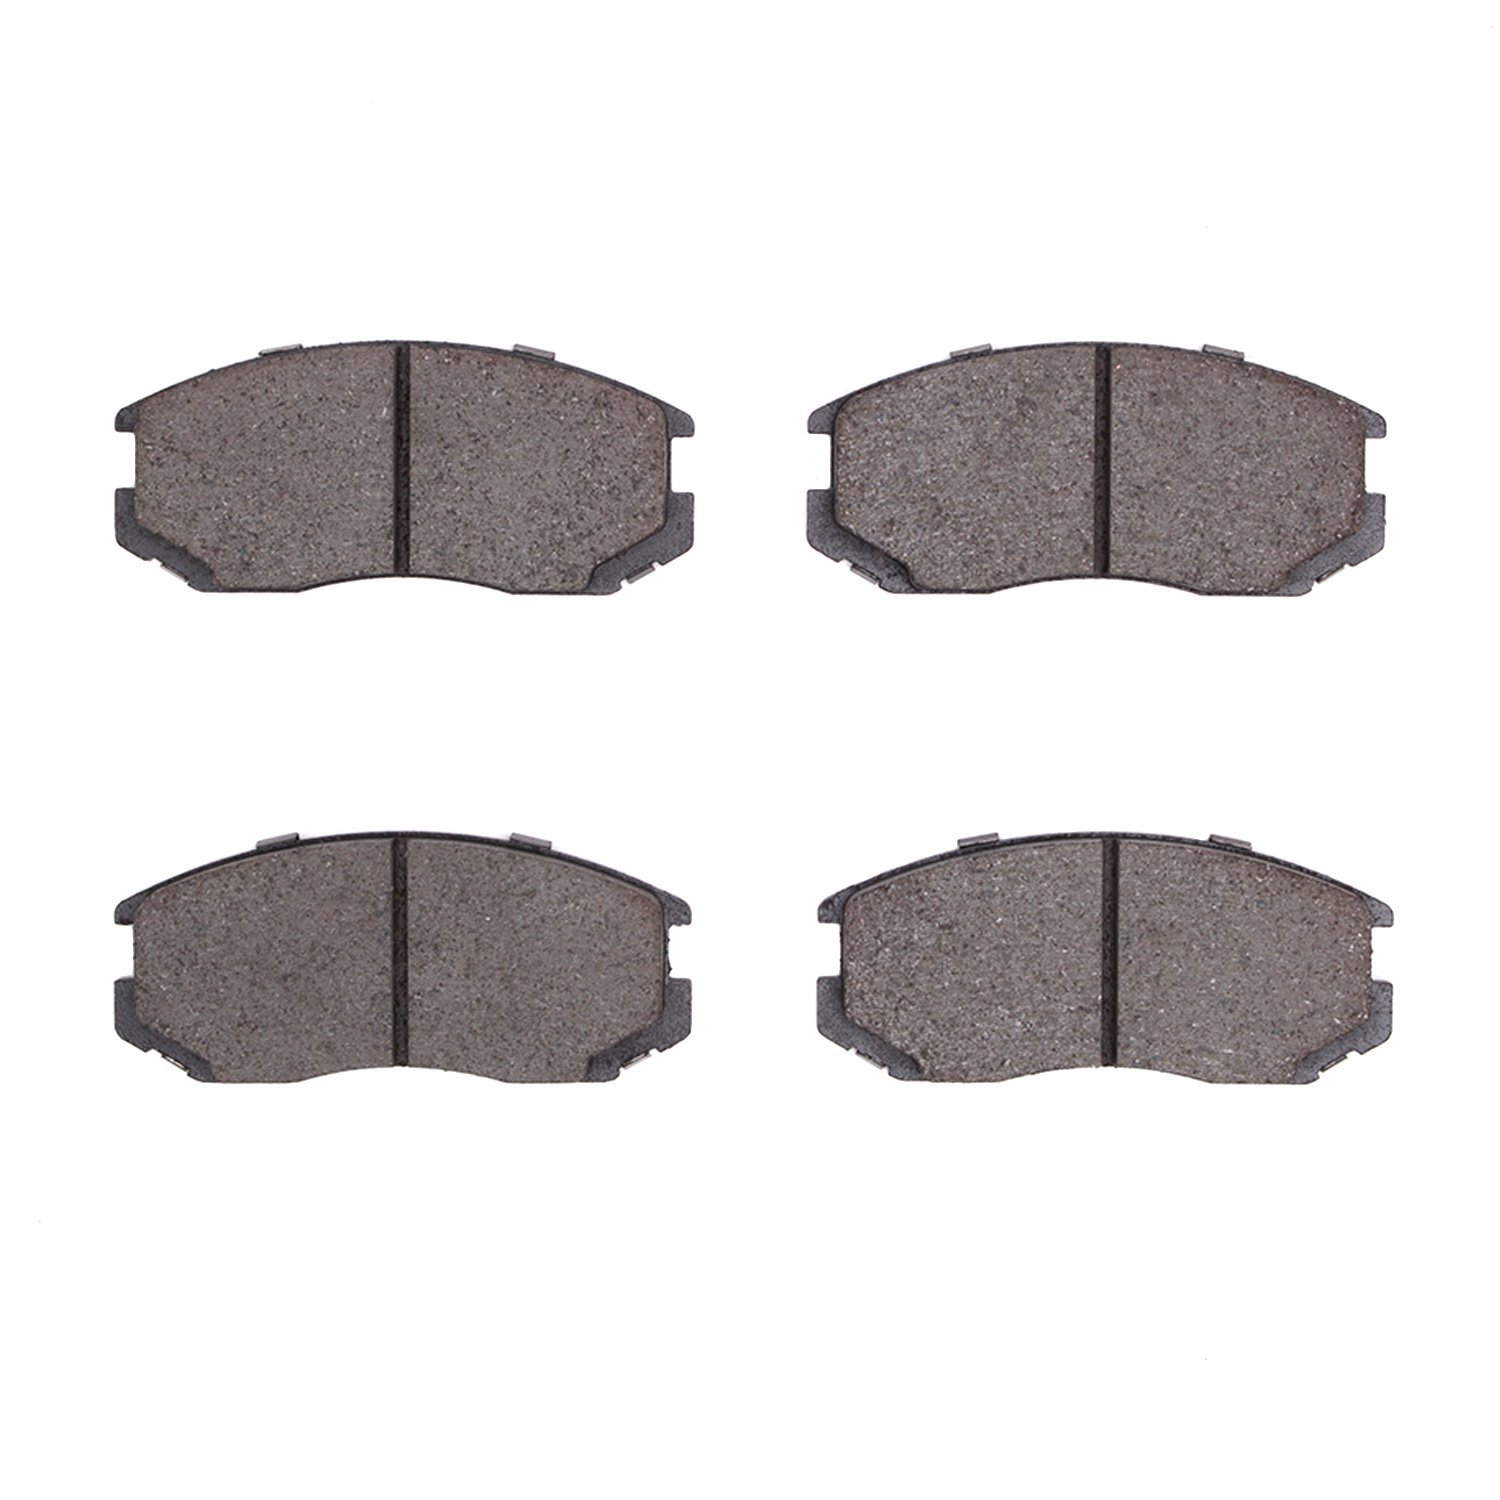 Ceramic Brake Pads, 1991-2000 Fits Multiple Makes/Models, Position: Front